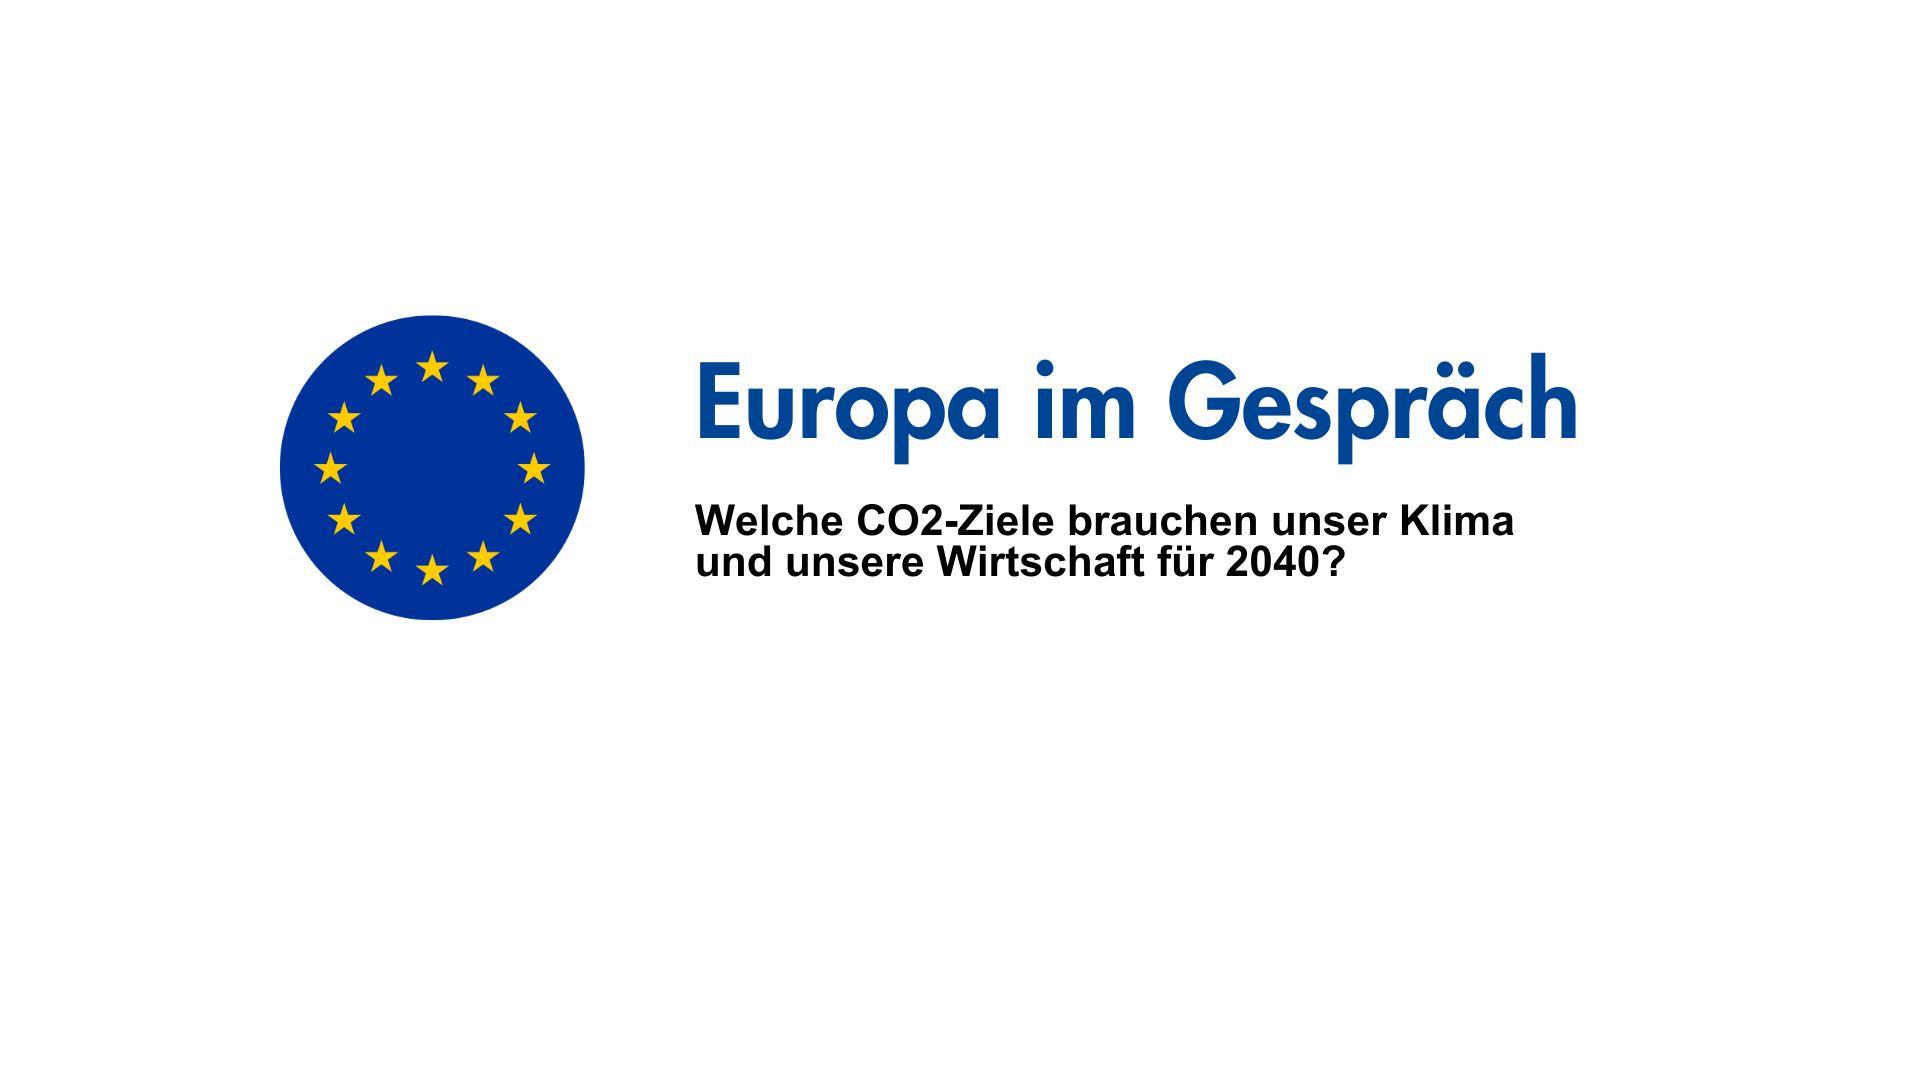 Europa im Gespräch_CO2 Ziele